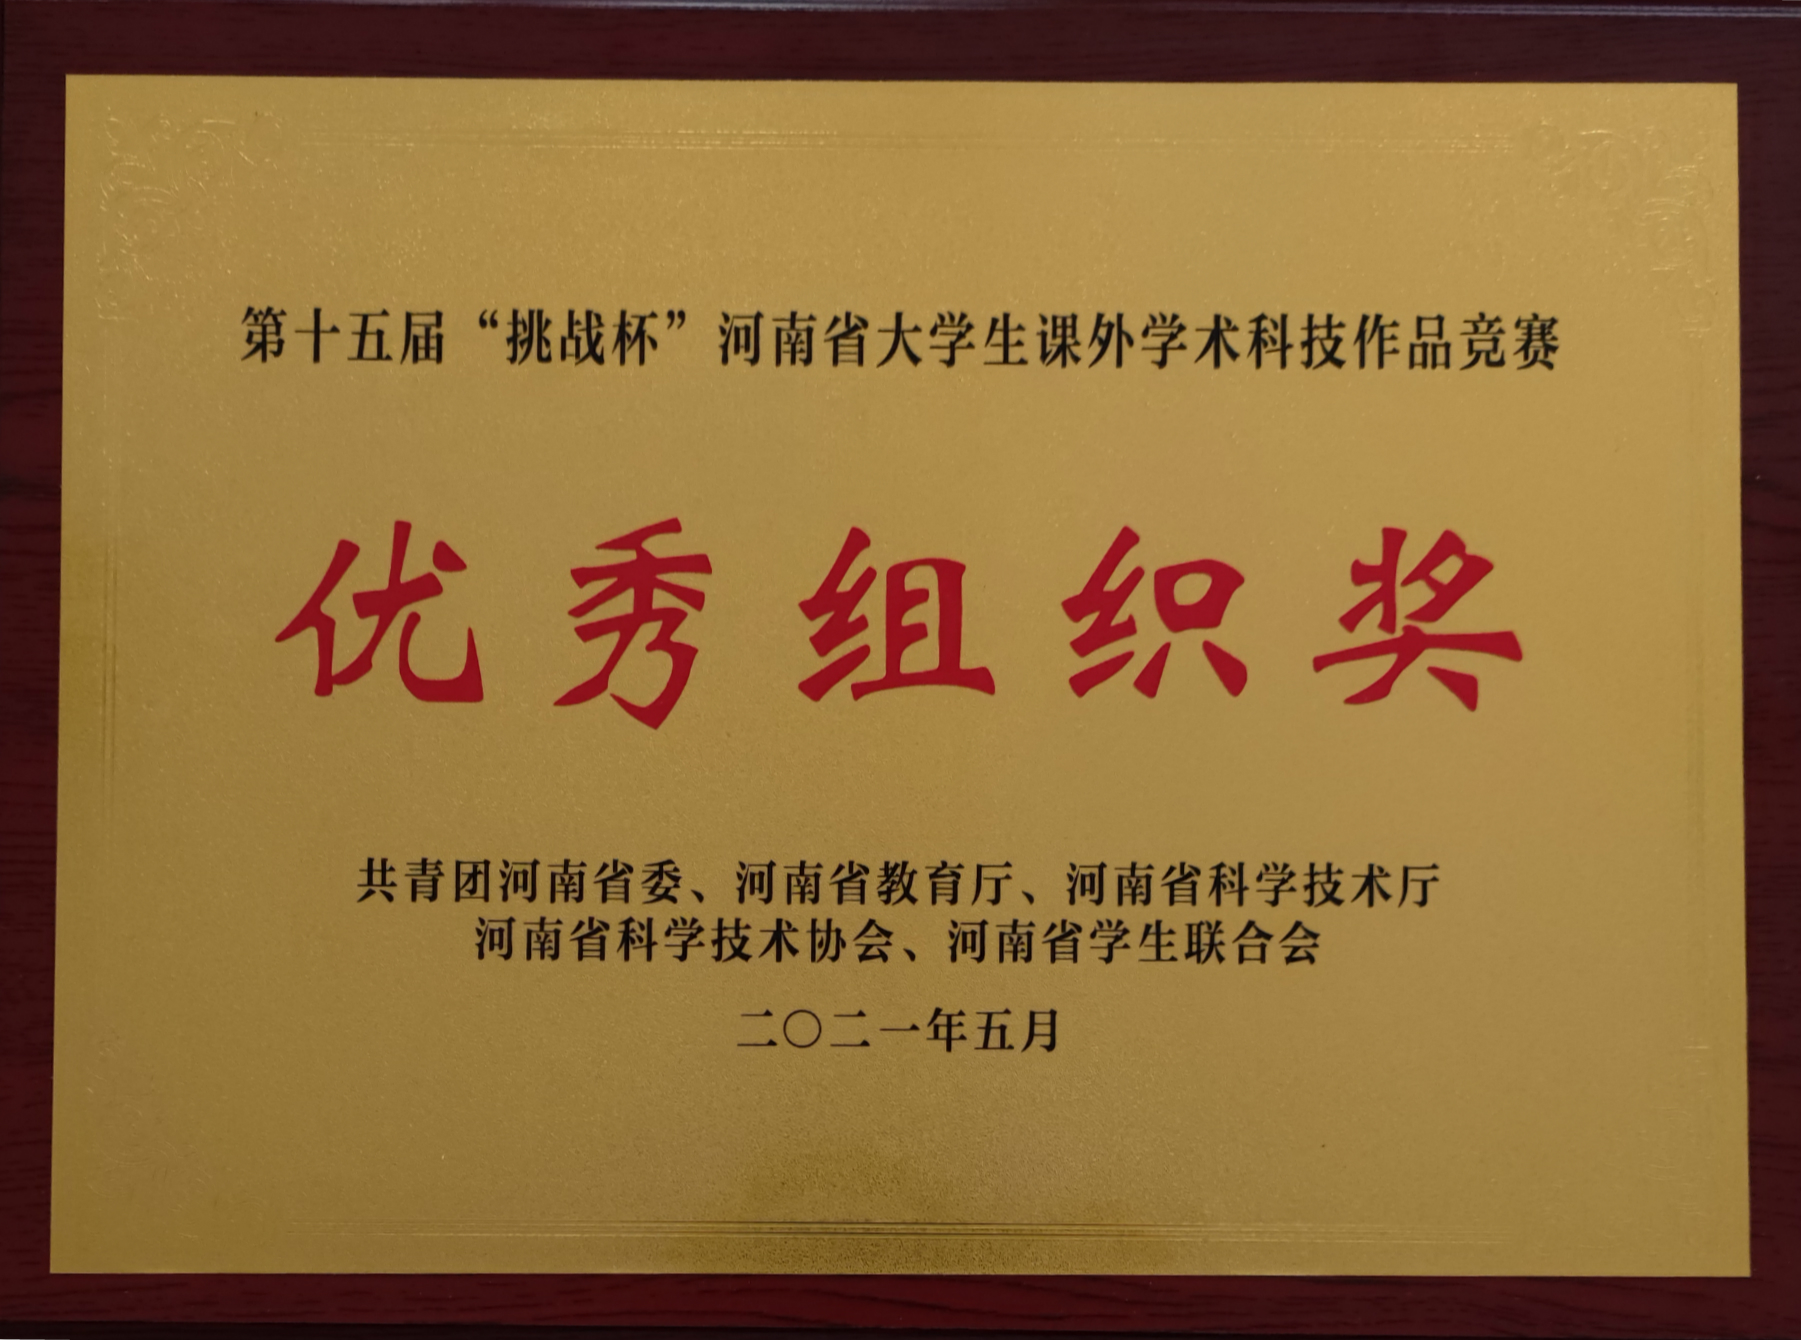 许昌学院在第十五届“挑战杯”河南省大学生课外学术科技作品竞赛中获佳绩